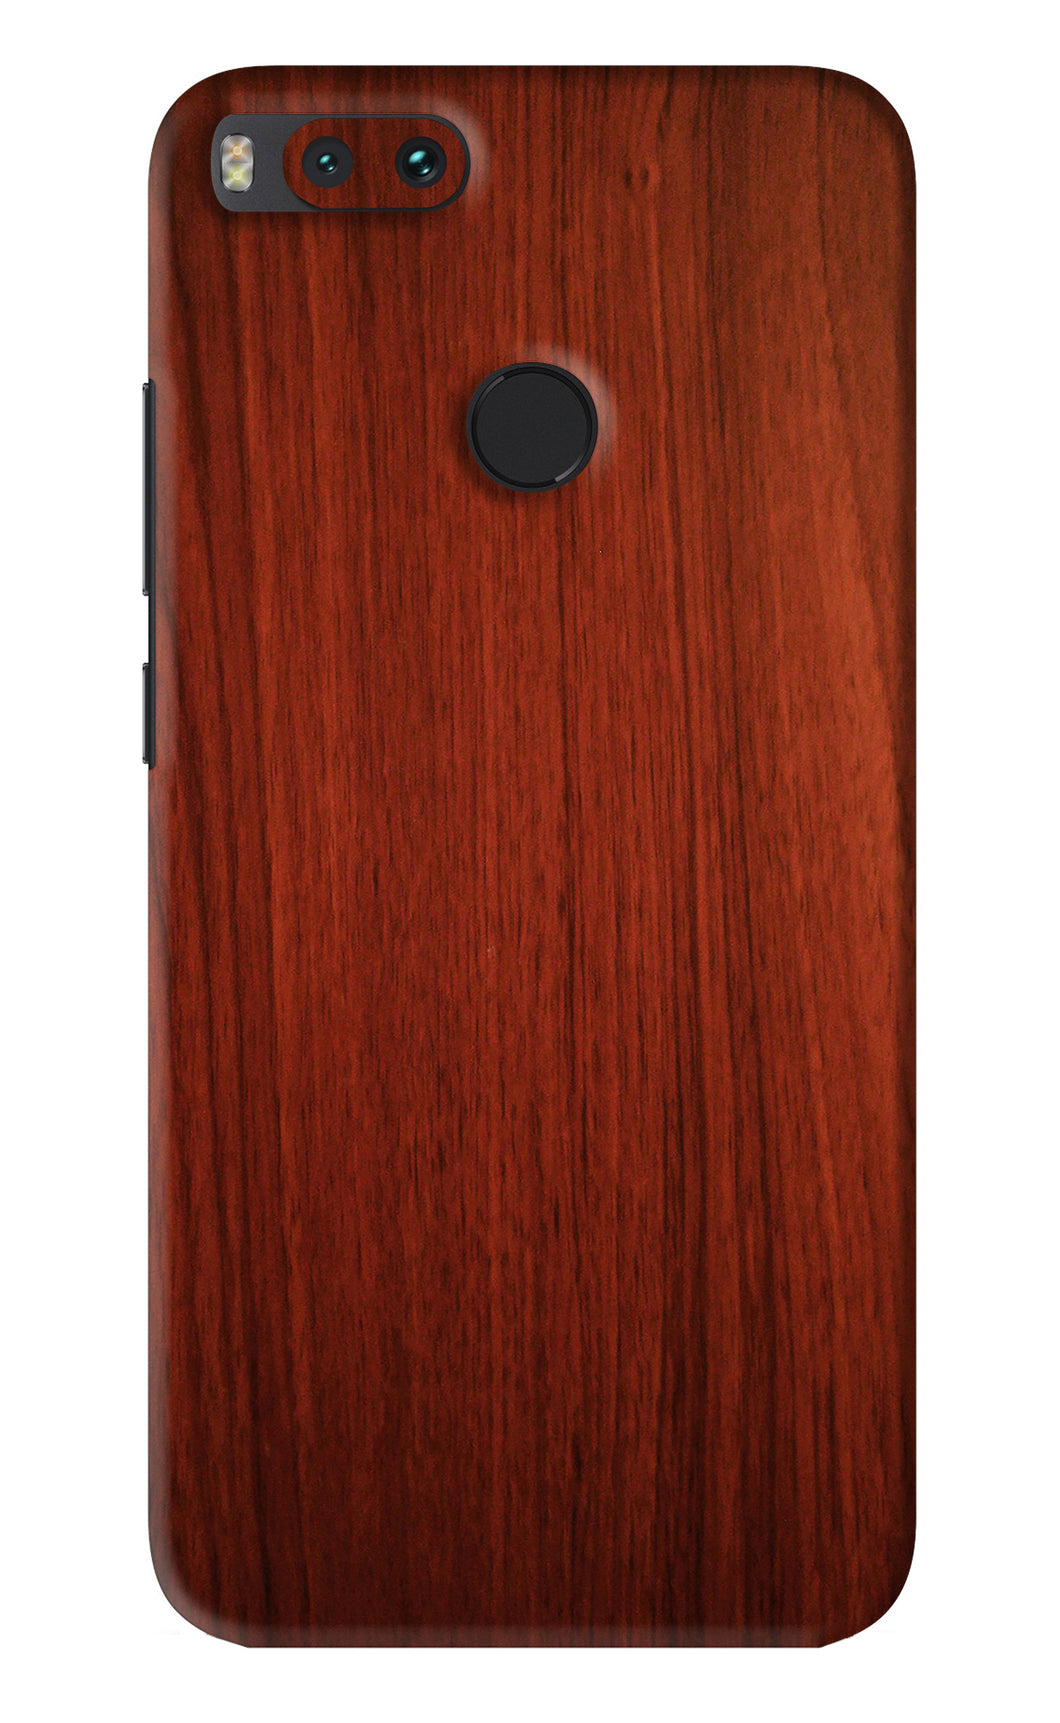 Wooden Plain Pattern Xiaomi Redmi Mi A1 Back Skin Wrap